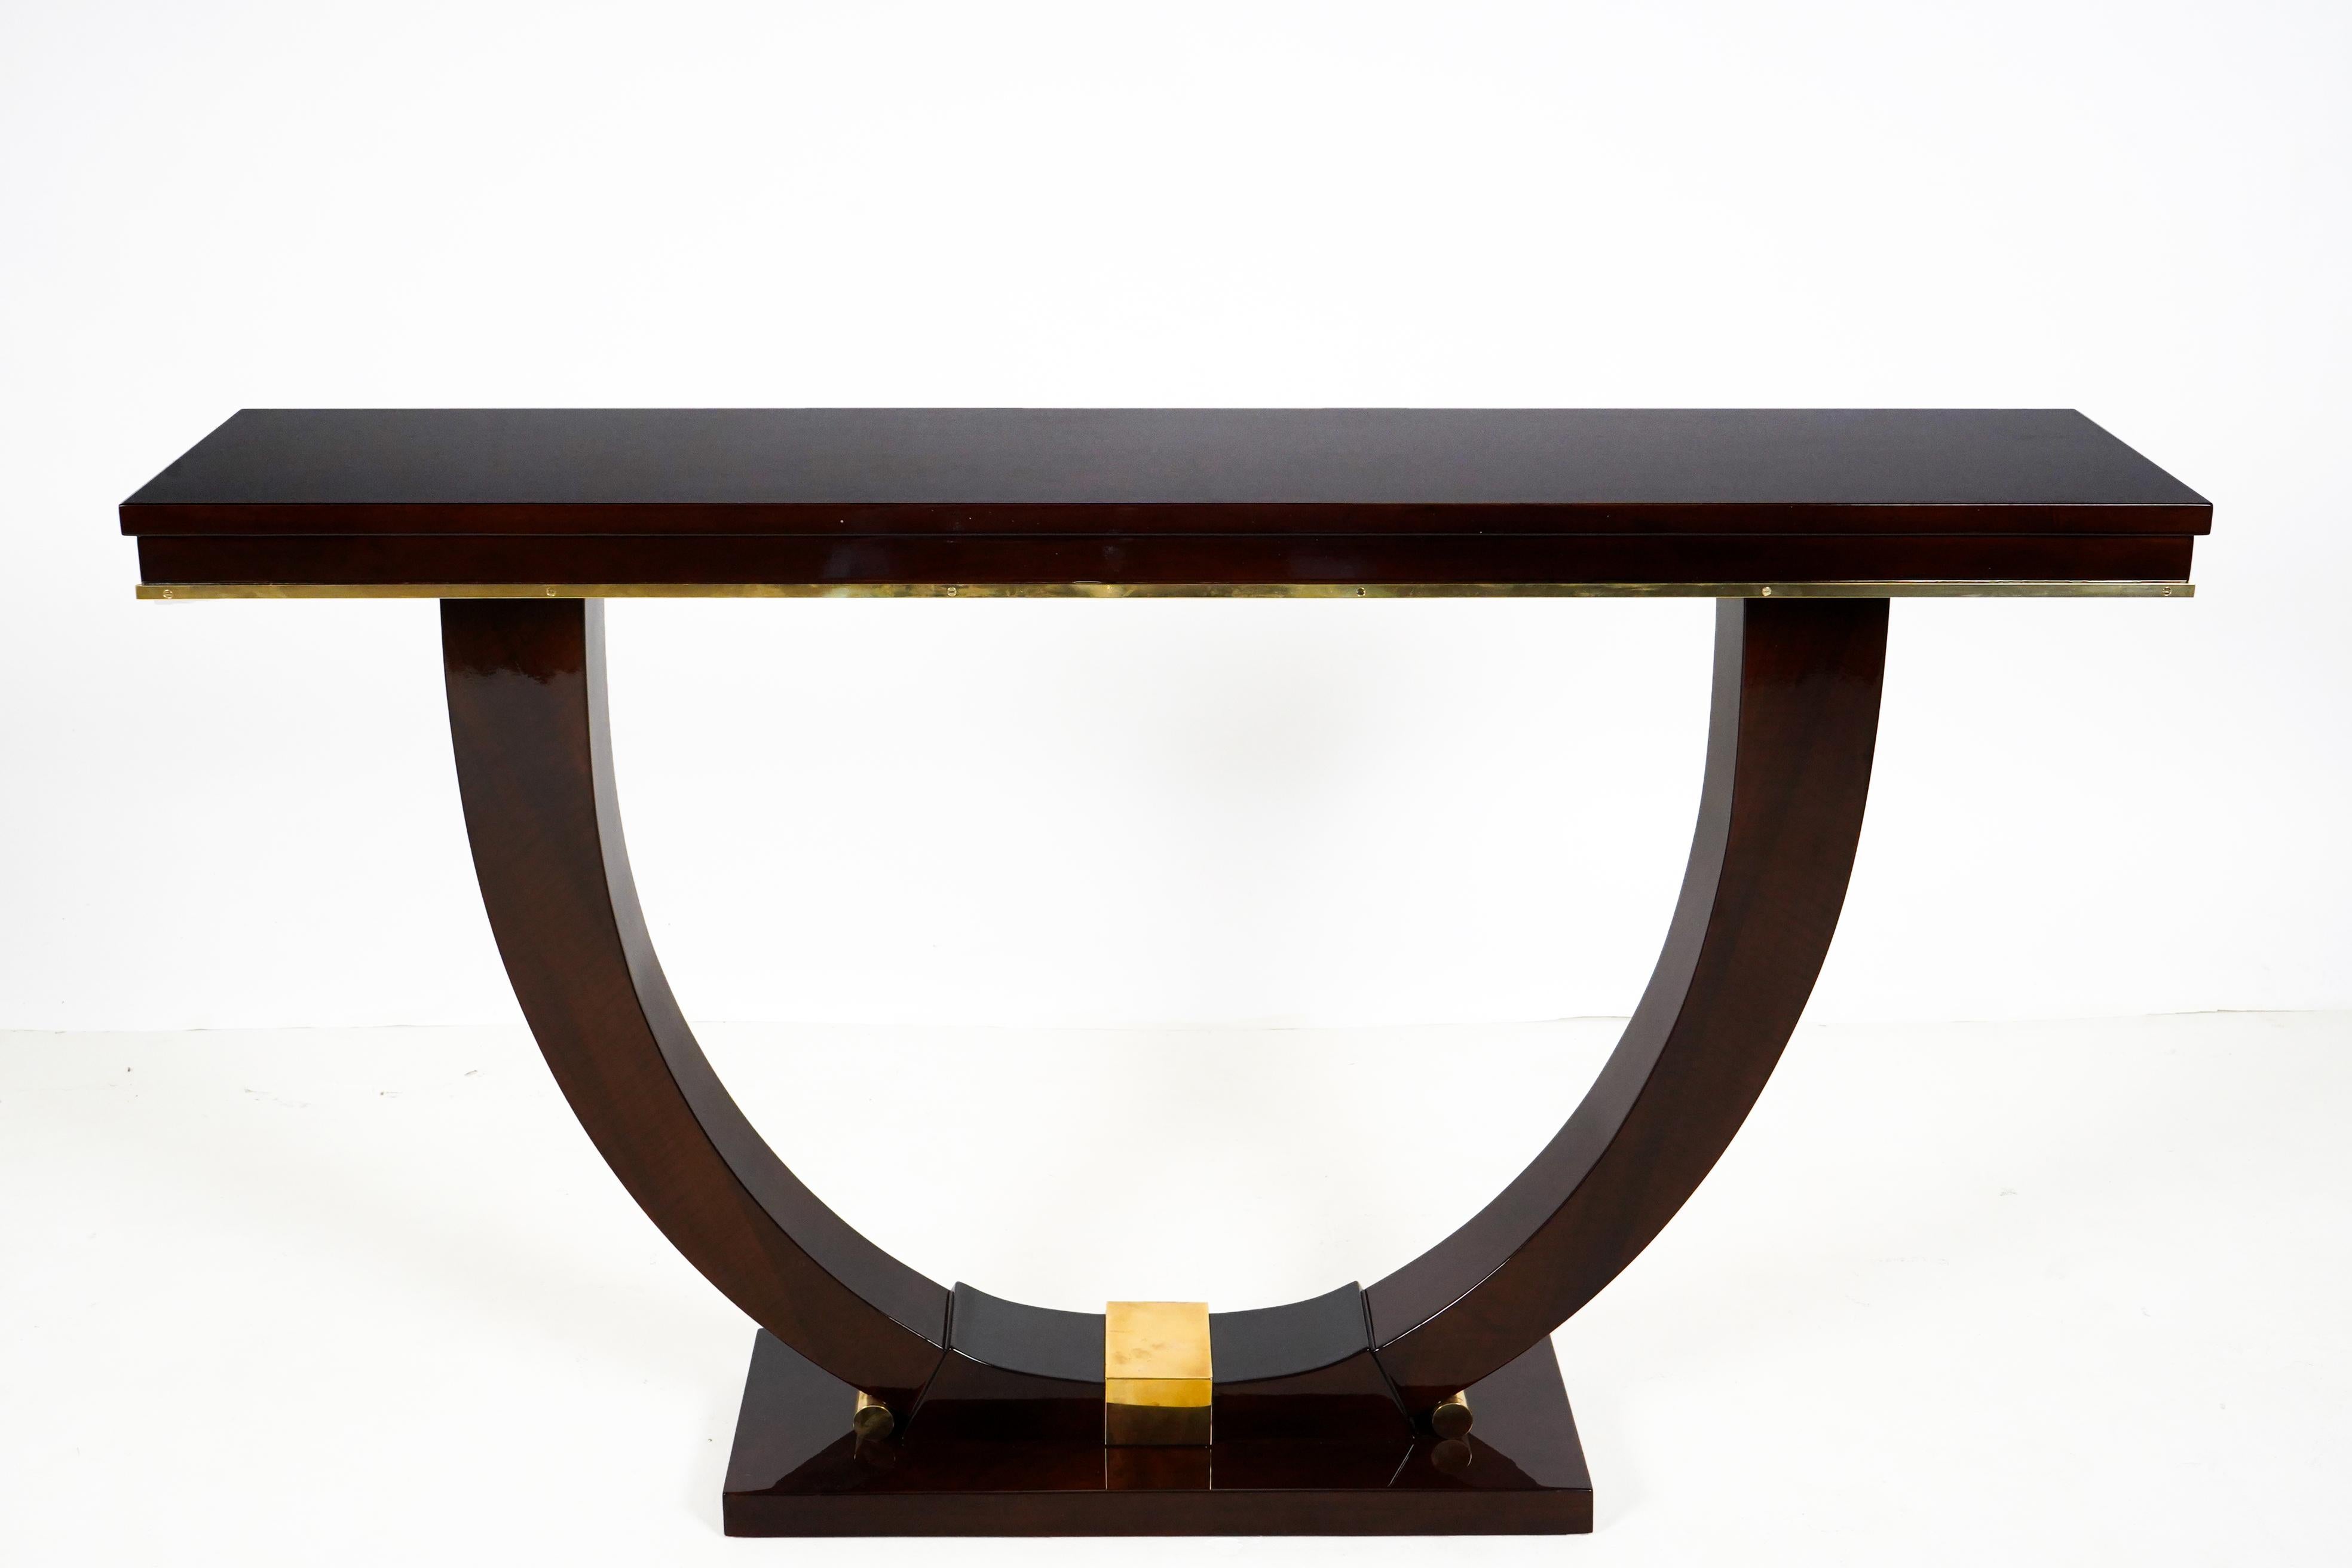 Diese klassische Art-Déco-Konsole ist ein zeitgenössisches Stück, das auf einem alten französischen Art-Déco-Design basiert. Ungarische Möbelhersteller beherrschten die Kunst der Herstellung von furnierten Möbeln bereits in der Biedermeierzeit